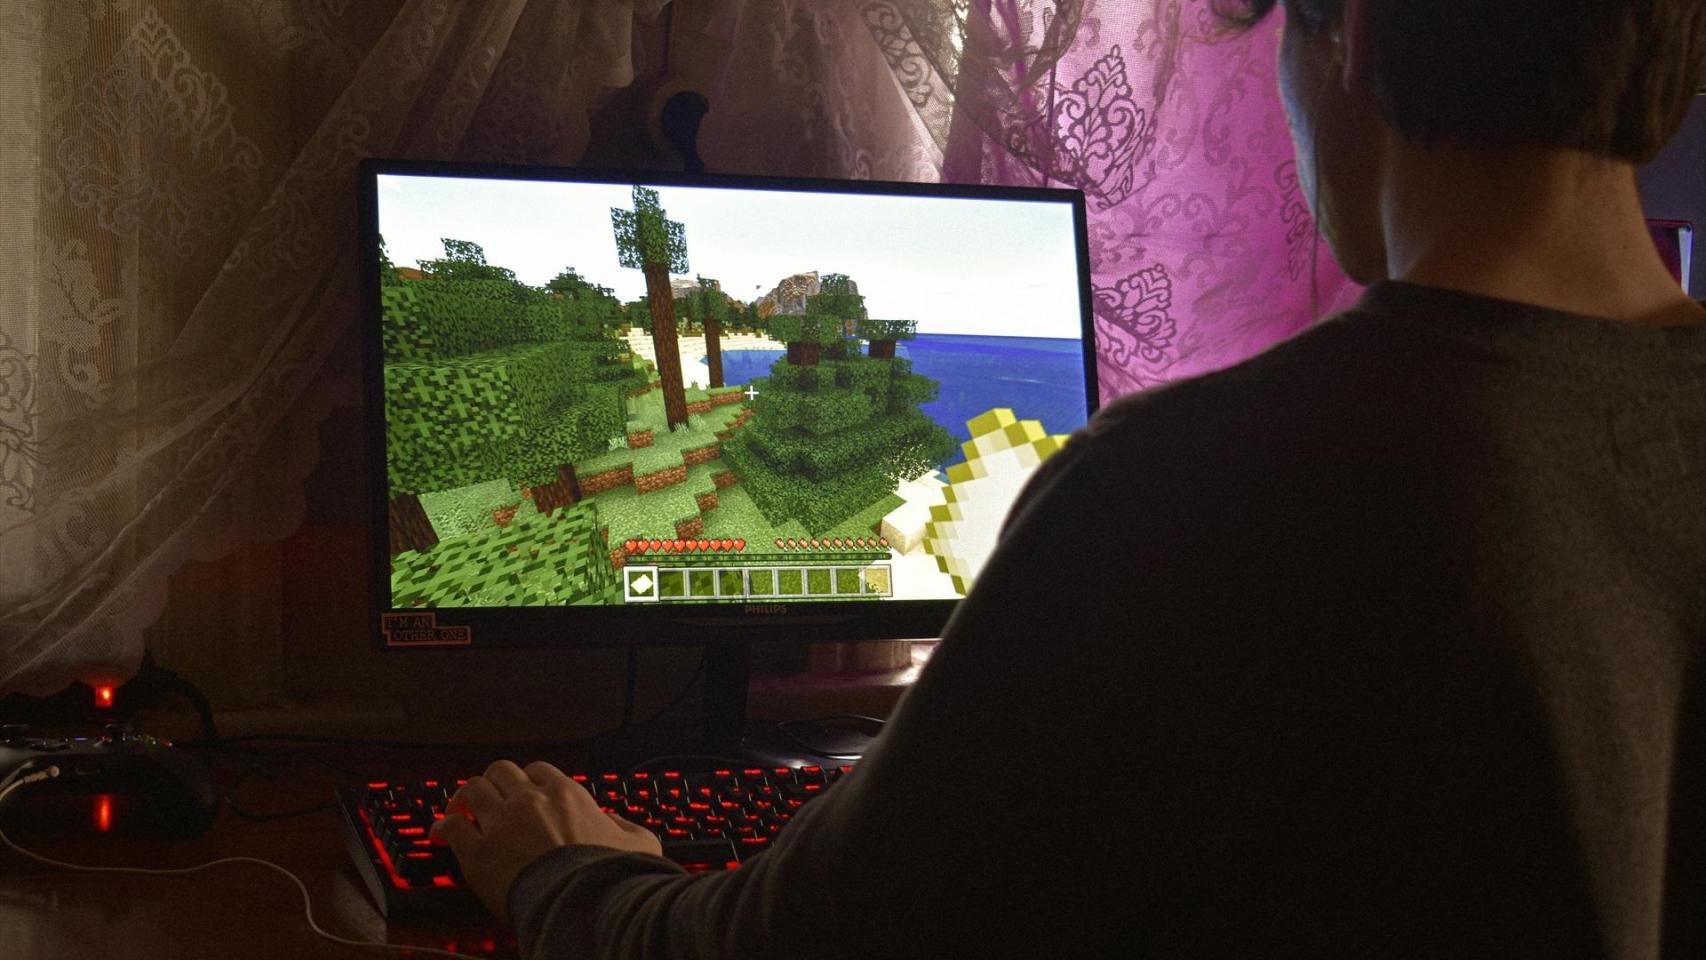 Una persona jugando a un videojuego en PC